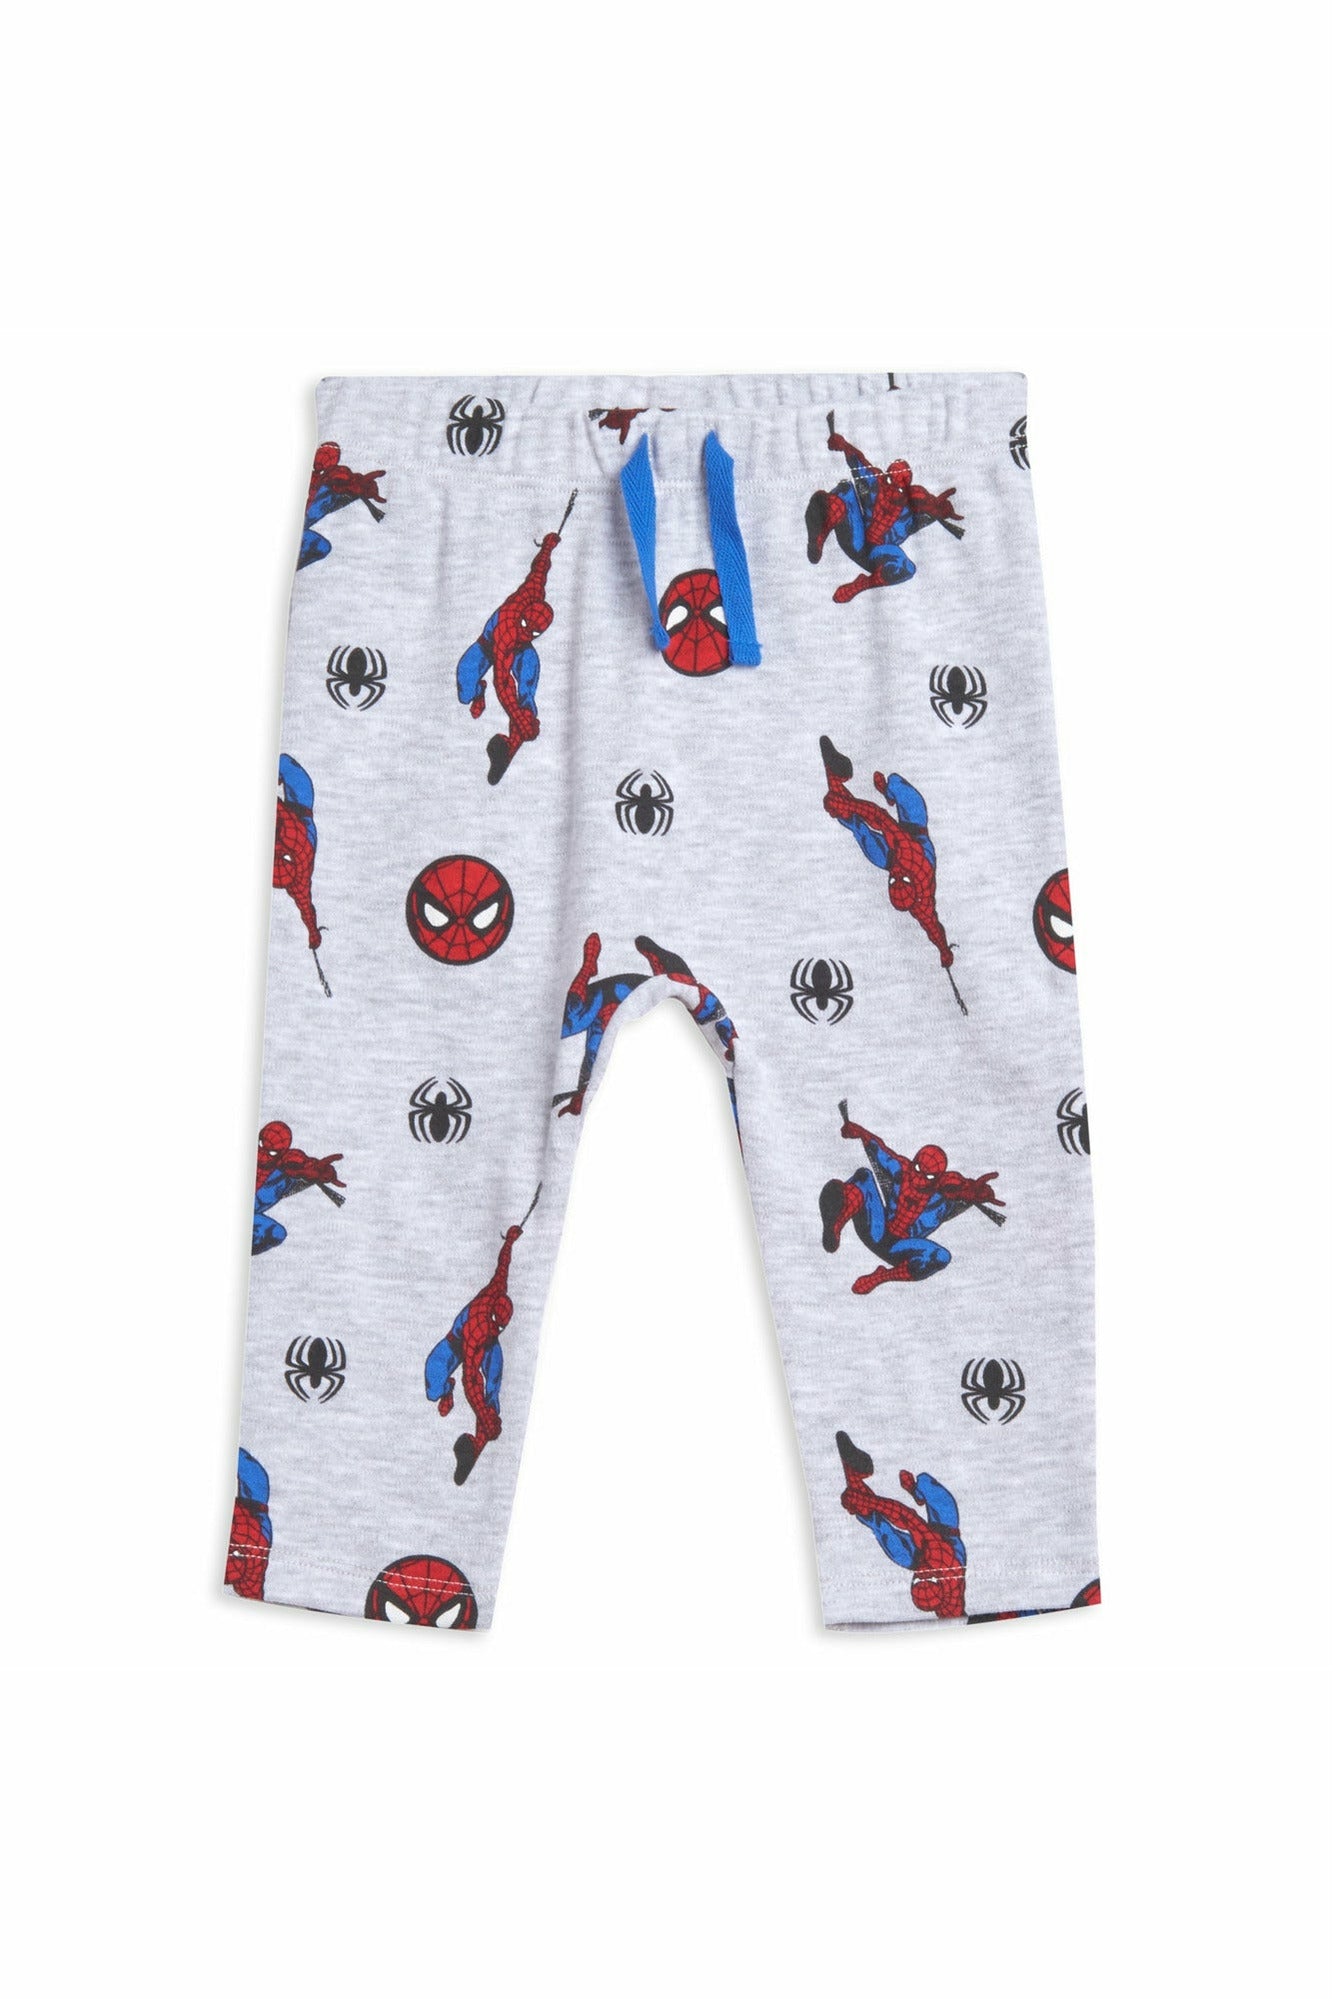 Spider-Man 3 Piece Outfit Set: Bodysuit T-Shirt Pants